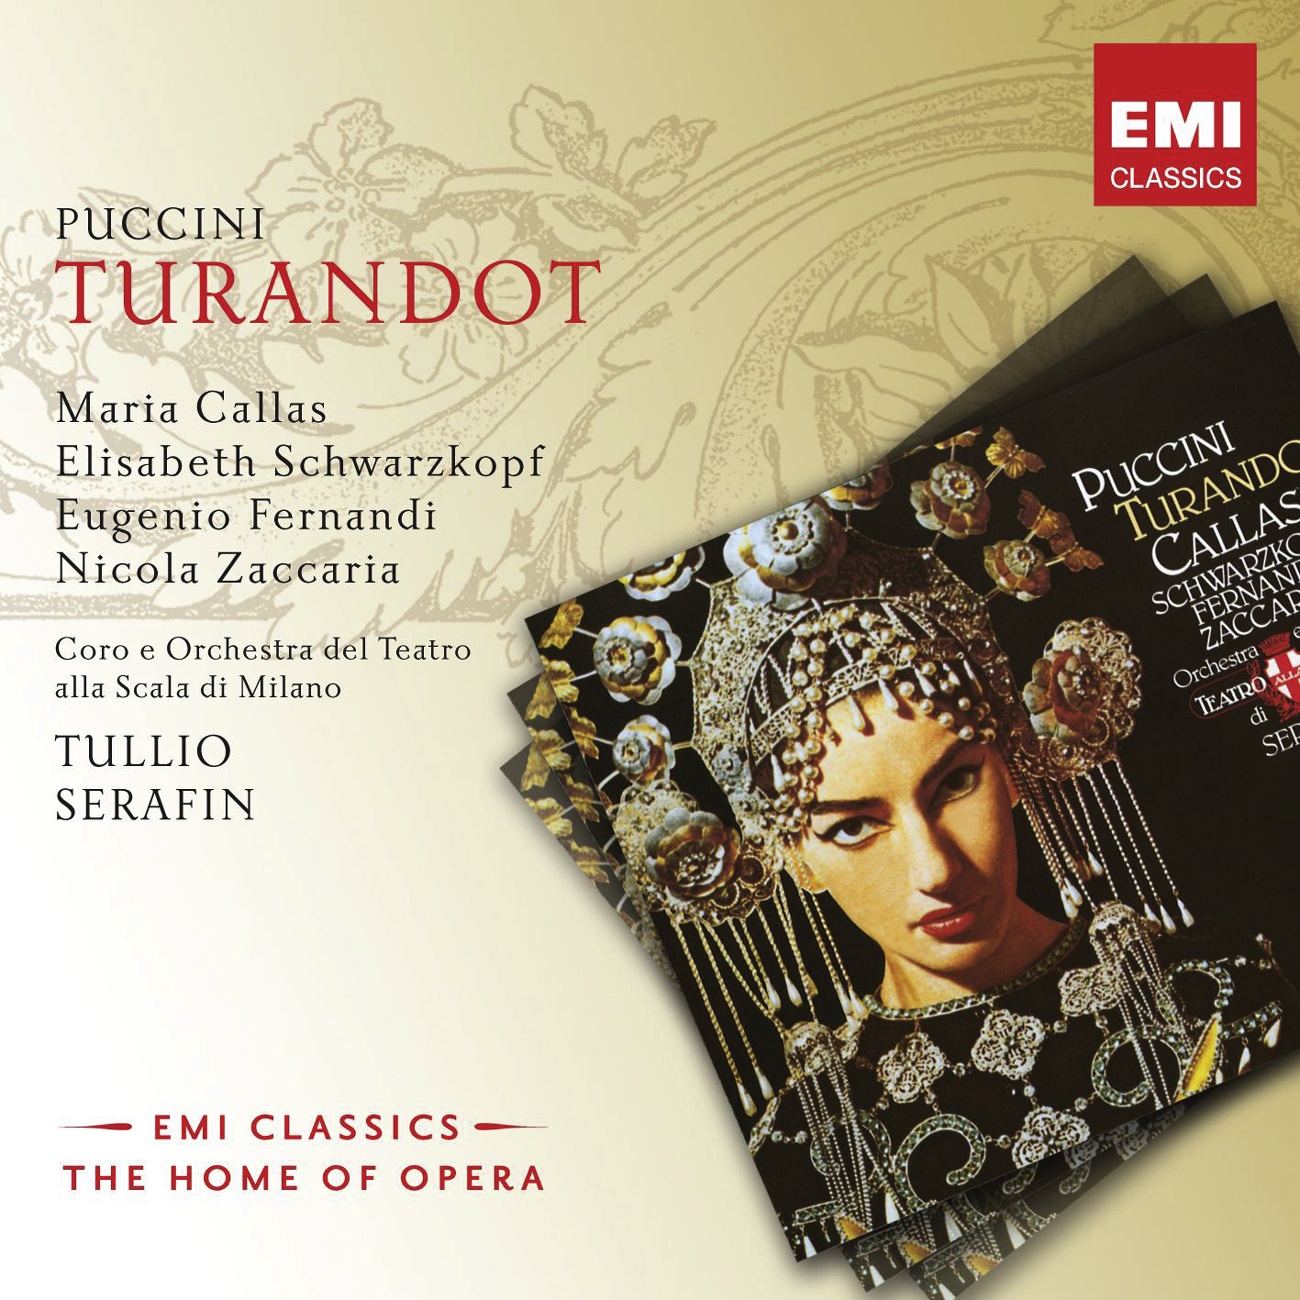 Turandot (2008 Digital Remaster), Act II - Scene II: Guizza al pari di fiamma